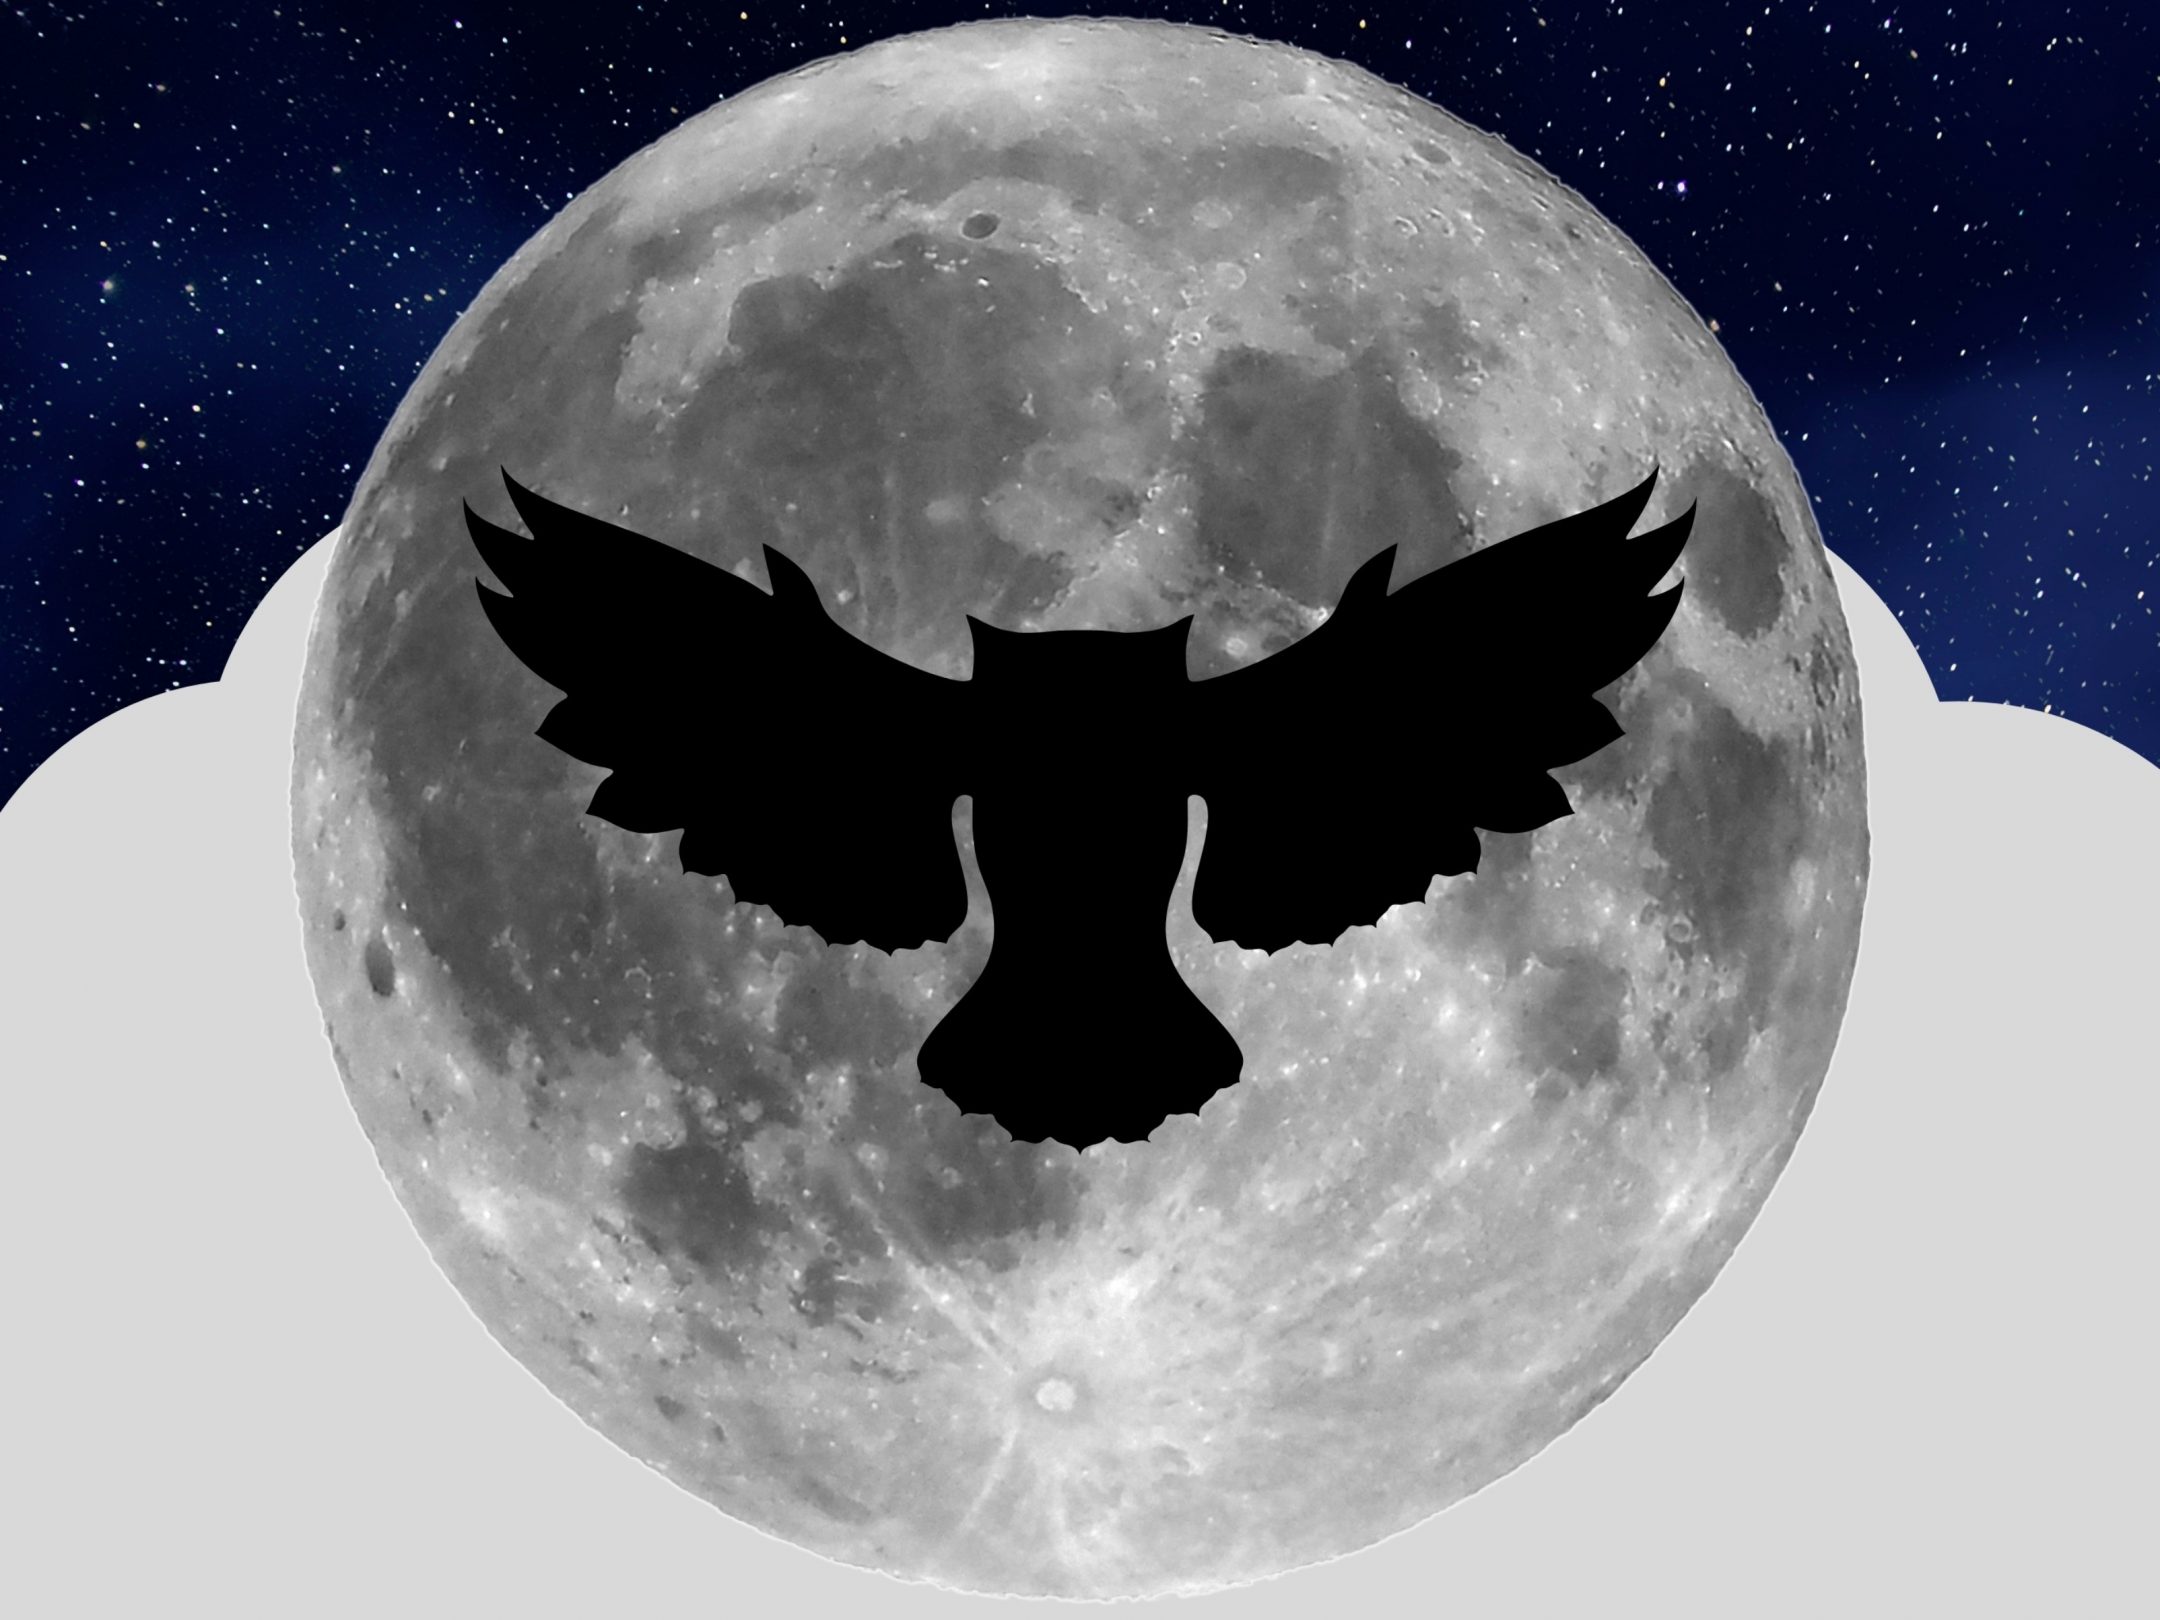 2160x1620 iPad wallpaper 4k Night Owl Full Moon iPad Wallpaper 2160x1620 pixels resolution